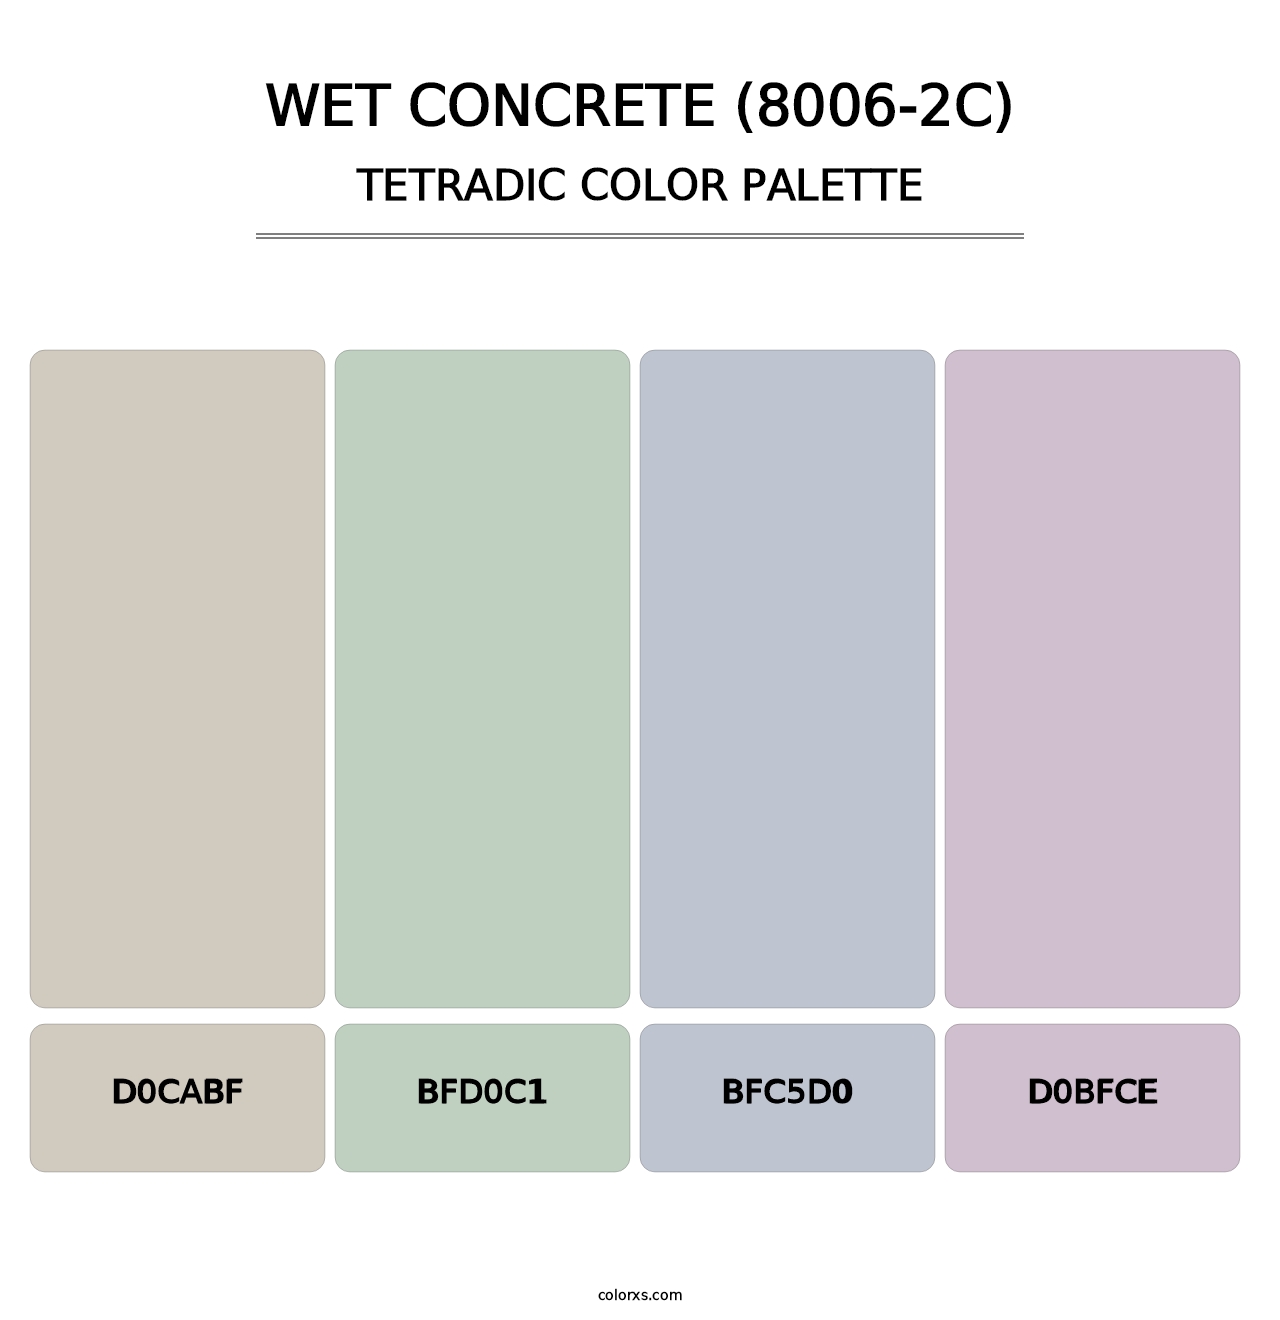 Wet Concrete (8006-2C) - Tetradic Color Palette